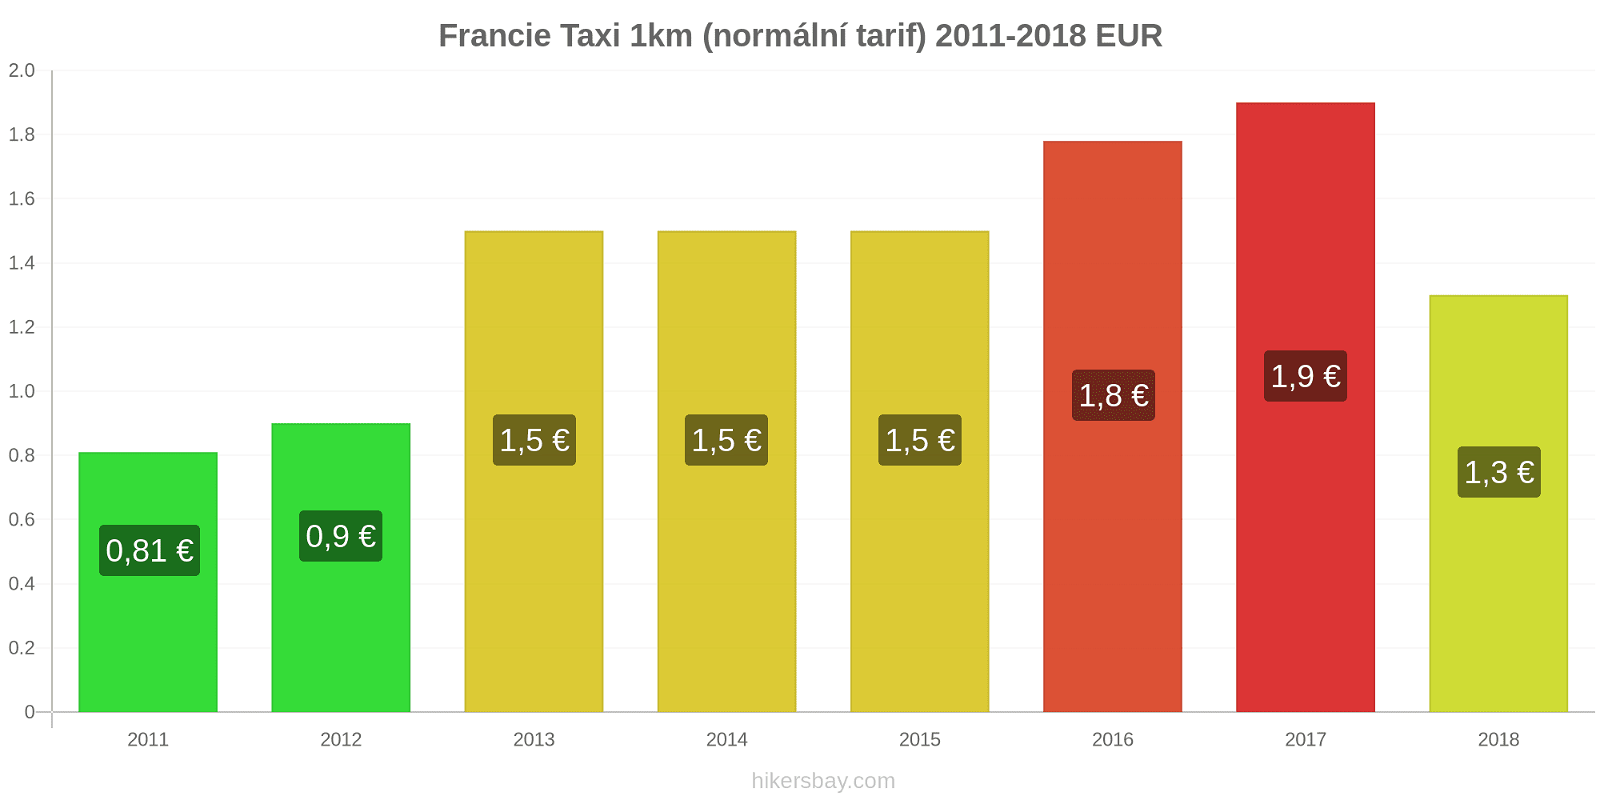 Francie změny cen Taxi 1km (normální tarif) hikersbay.com